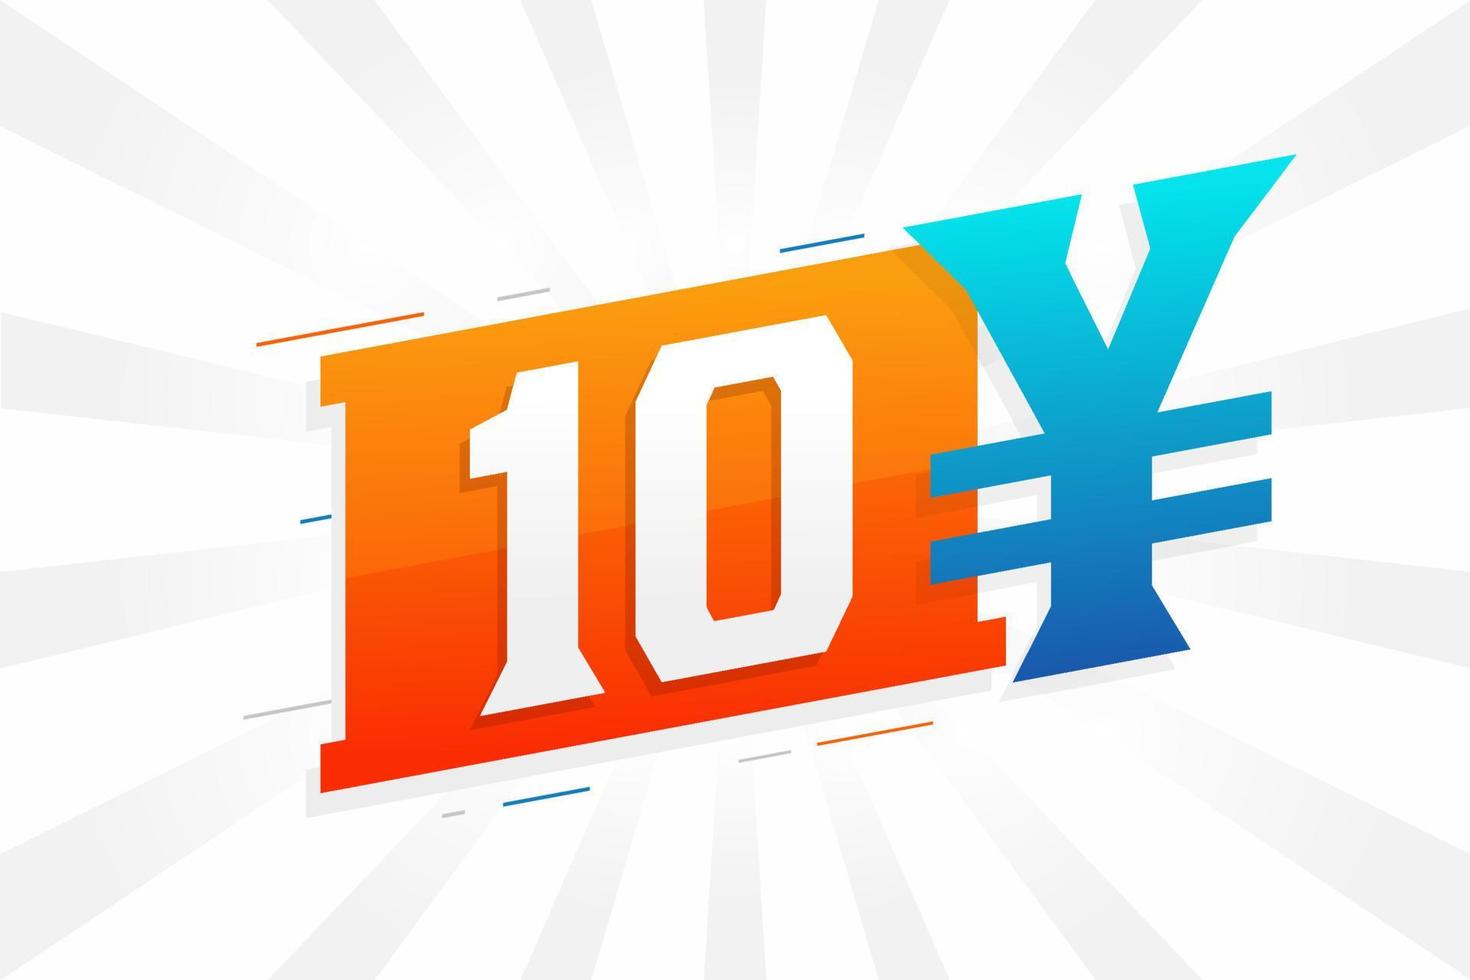 Símbolo de texto de vetor de moeda chinesa de 10 yuan. vetor de estoque de dinheiro de moeda japonesa de 10 ienes